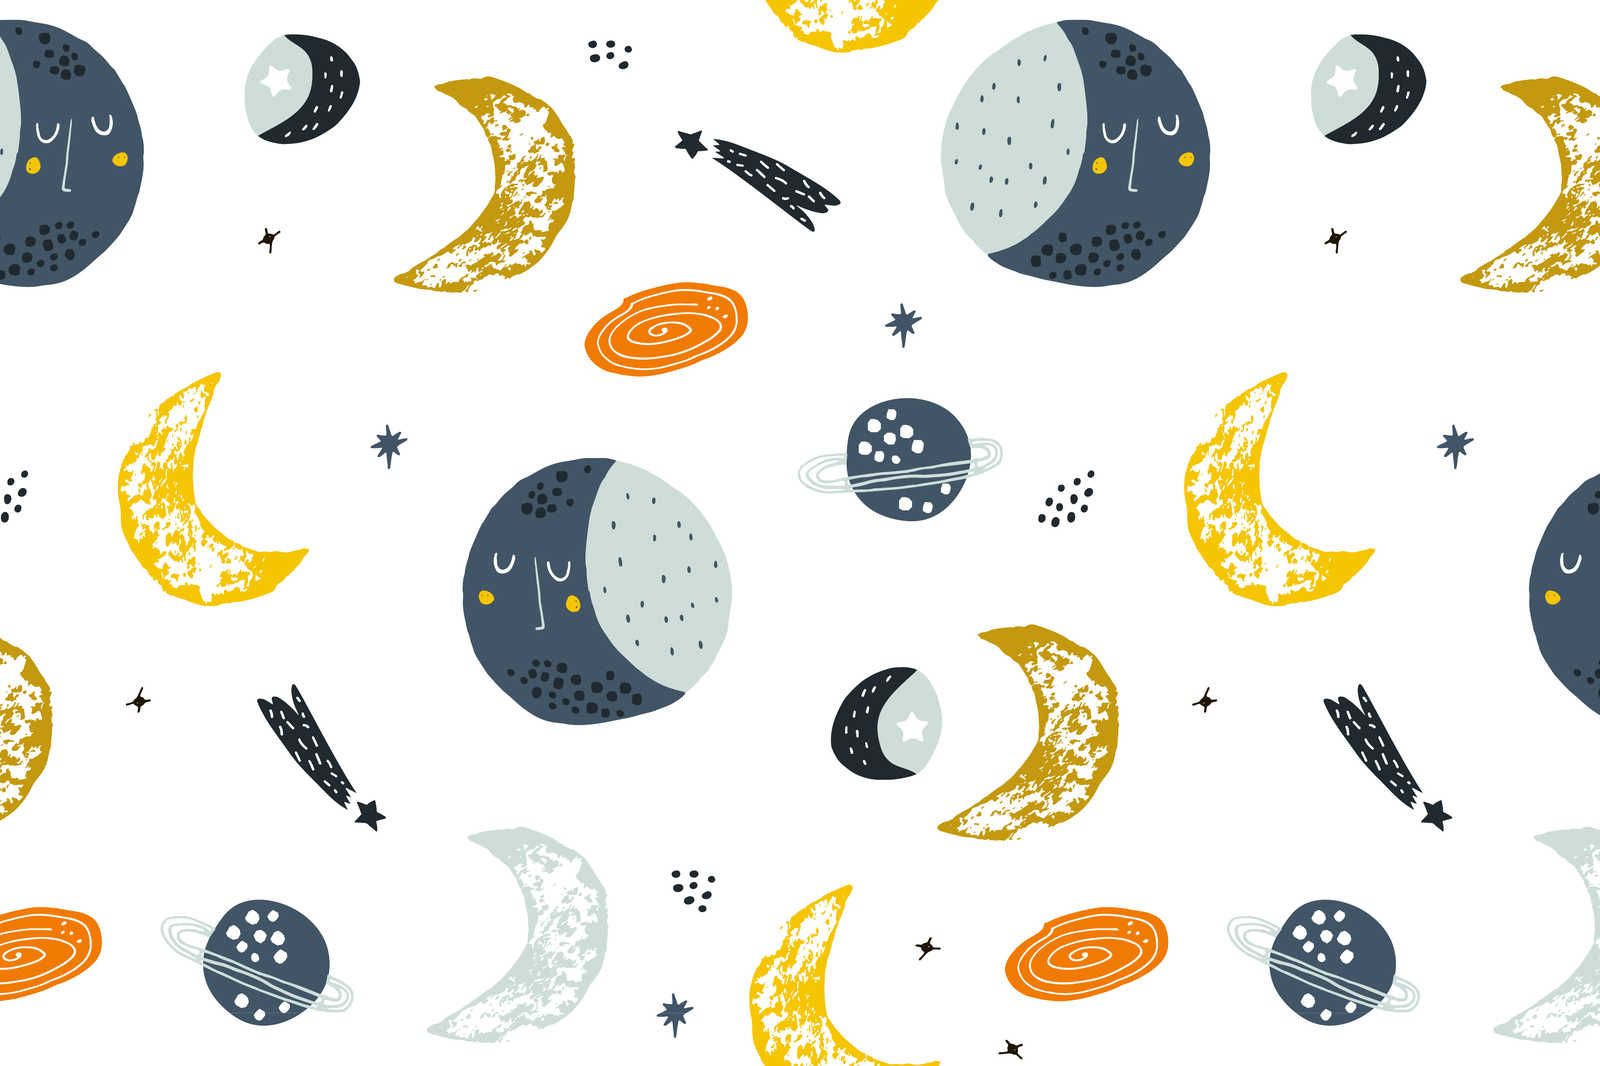             Toile avec des lunes et des étoiles filantes - 90 cm x 60 cm
        